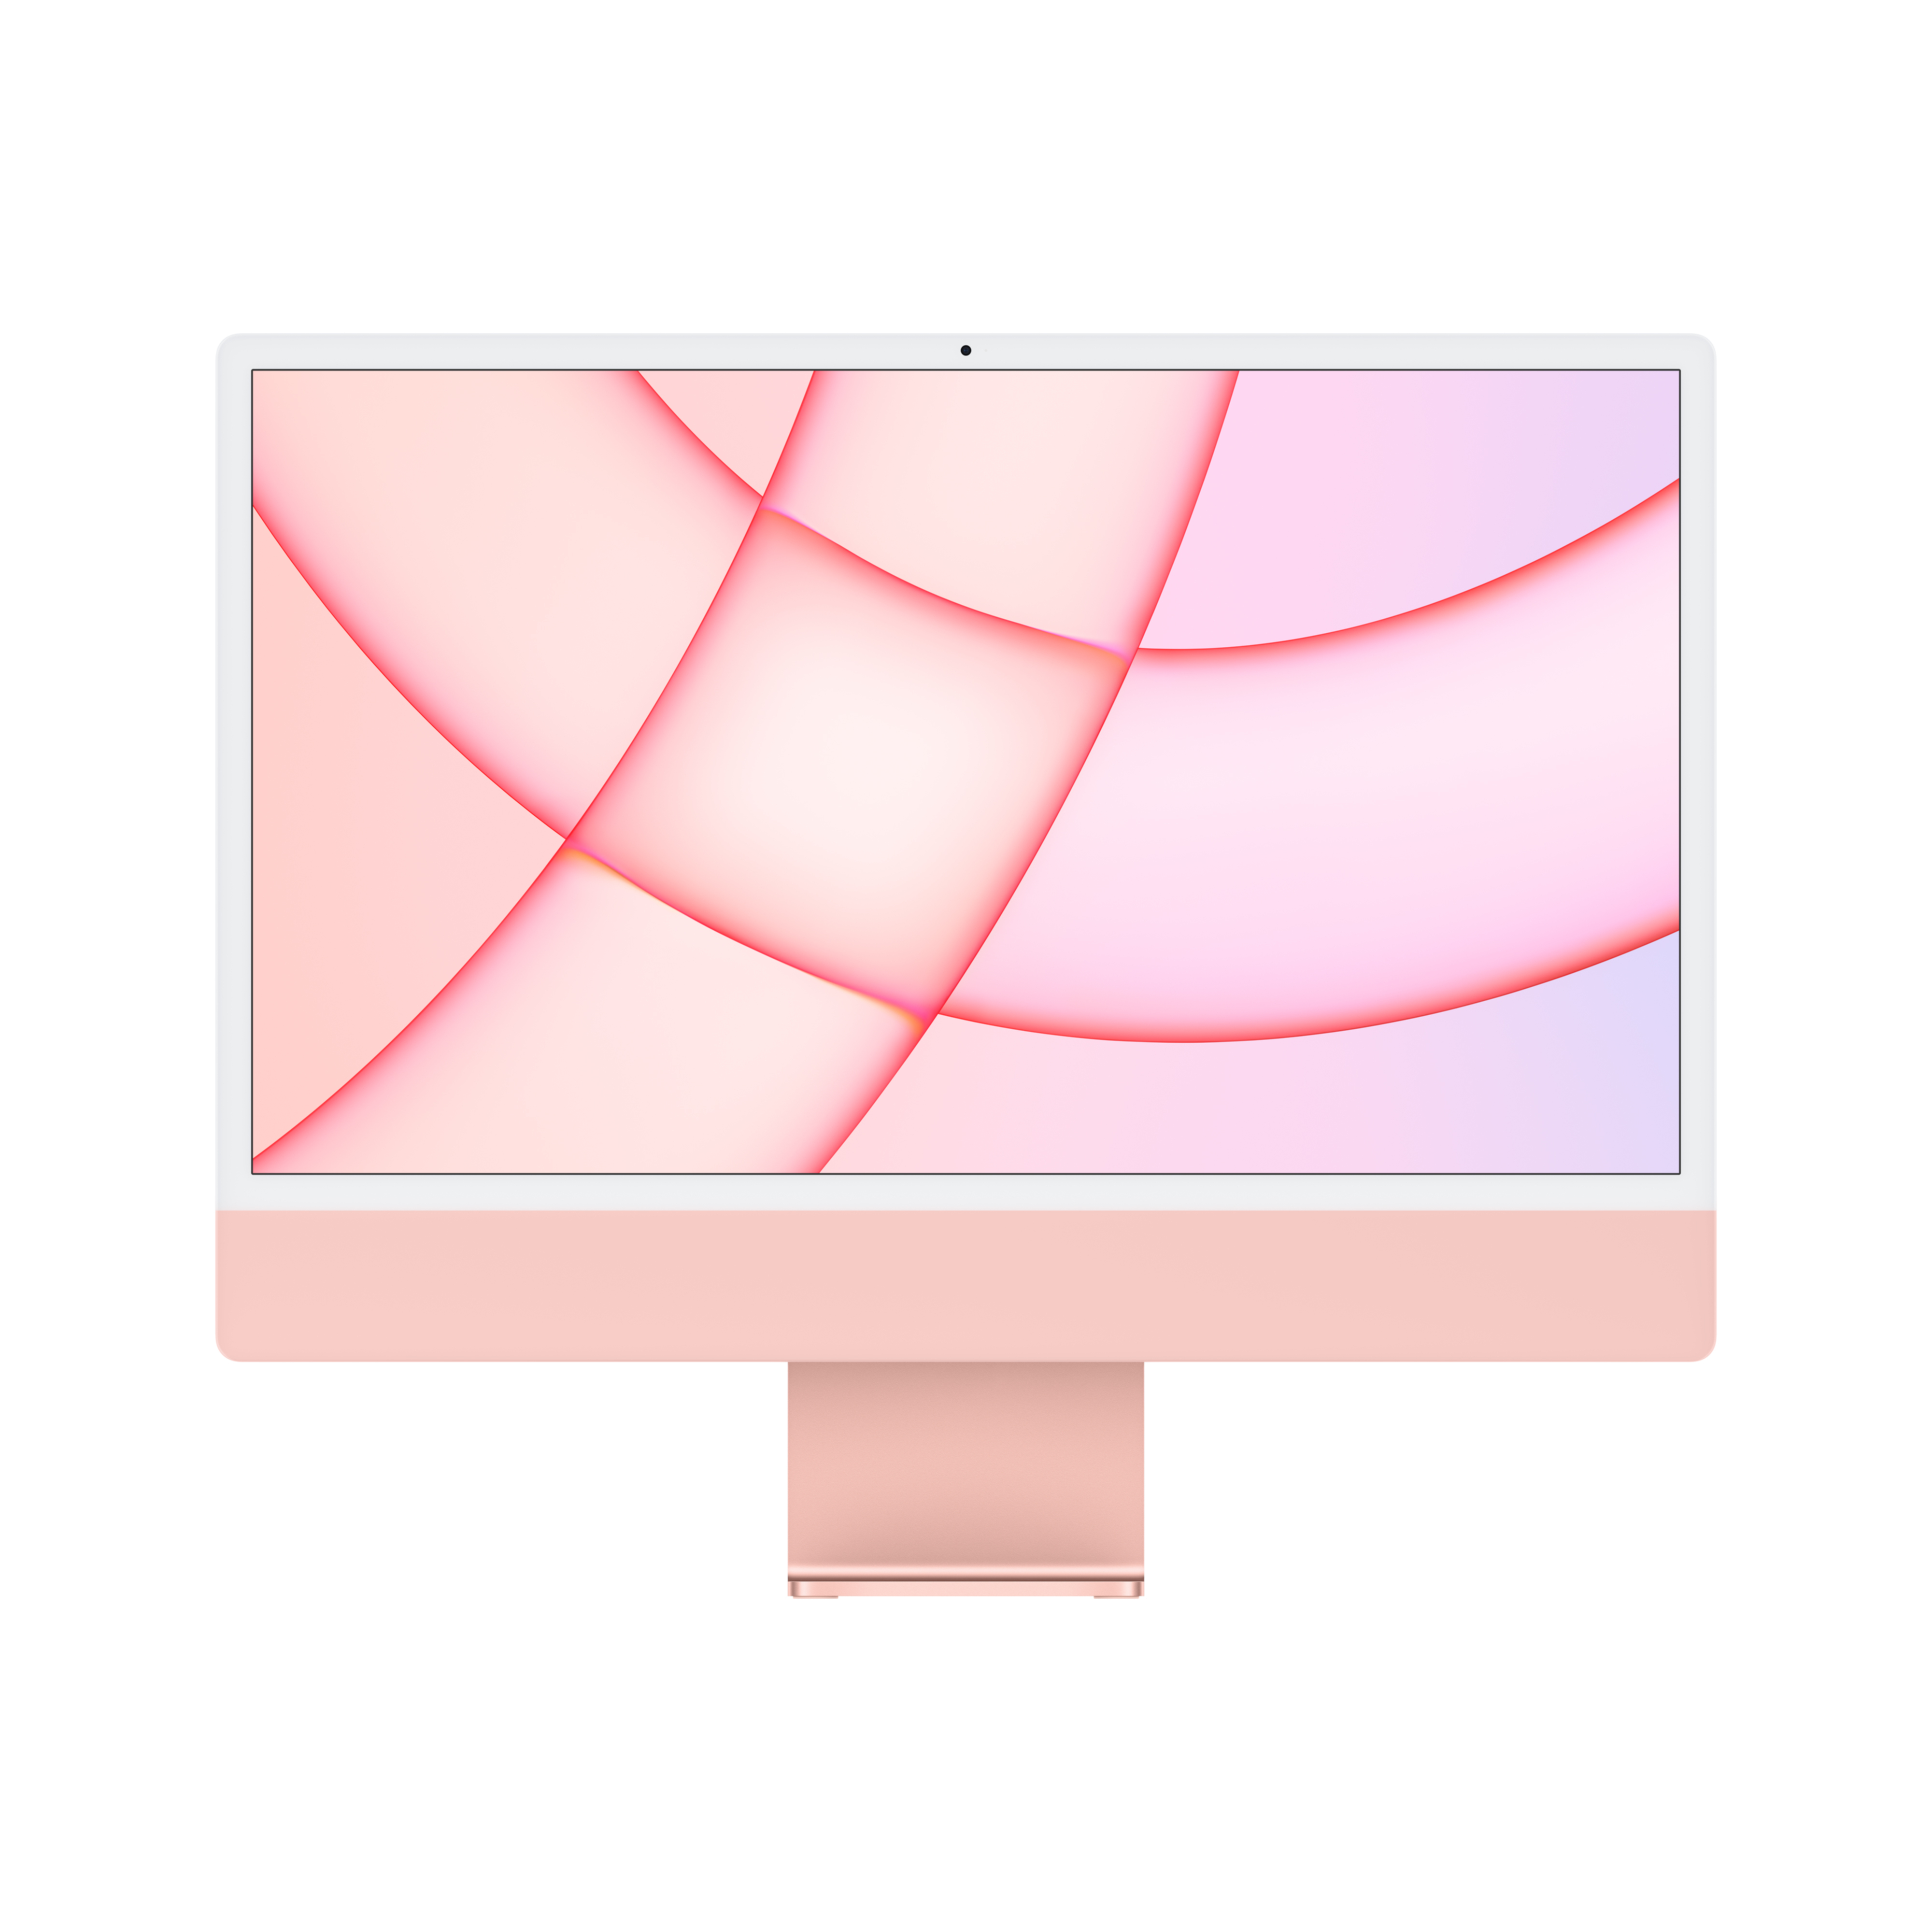 RURU_iMac_24-4ports_Pink_Q321_PDP_Image-1-1